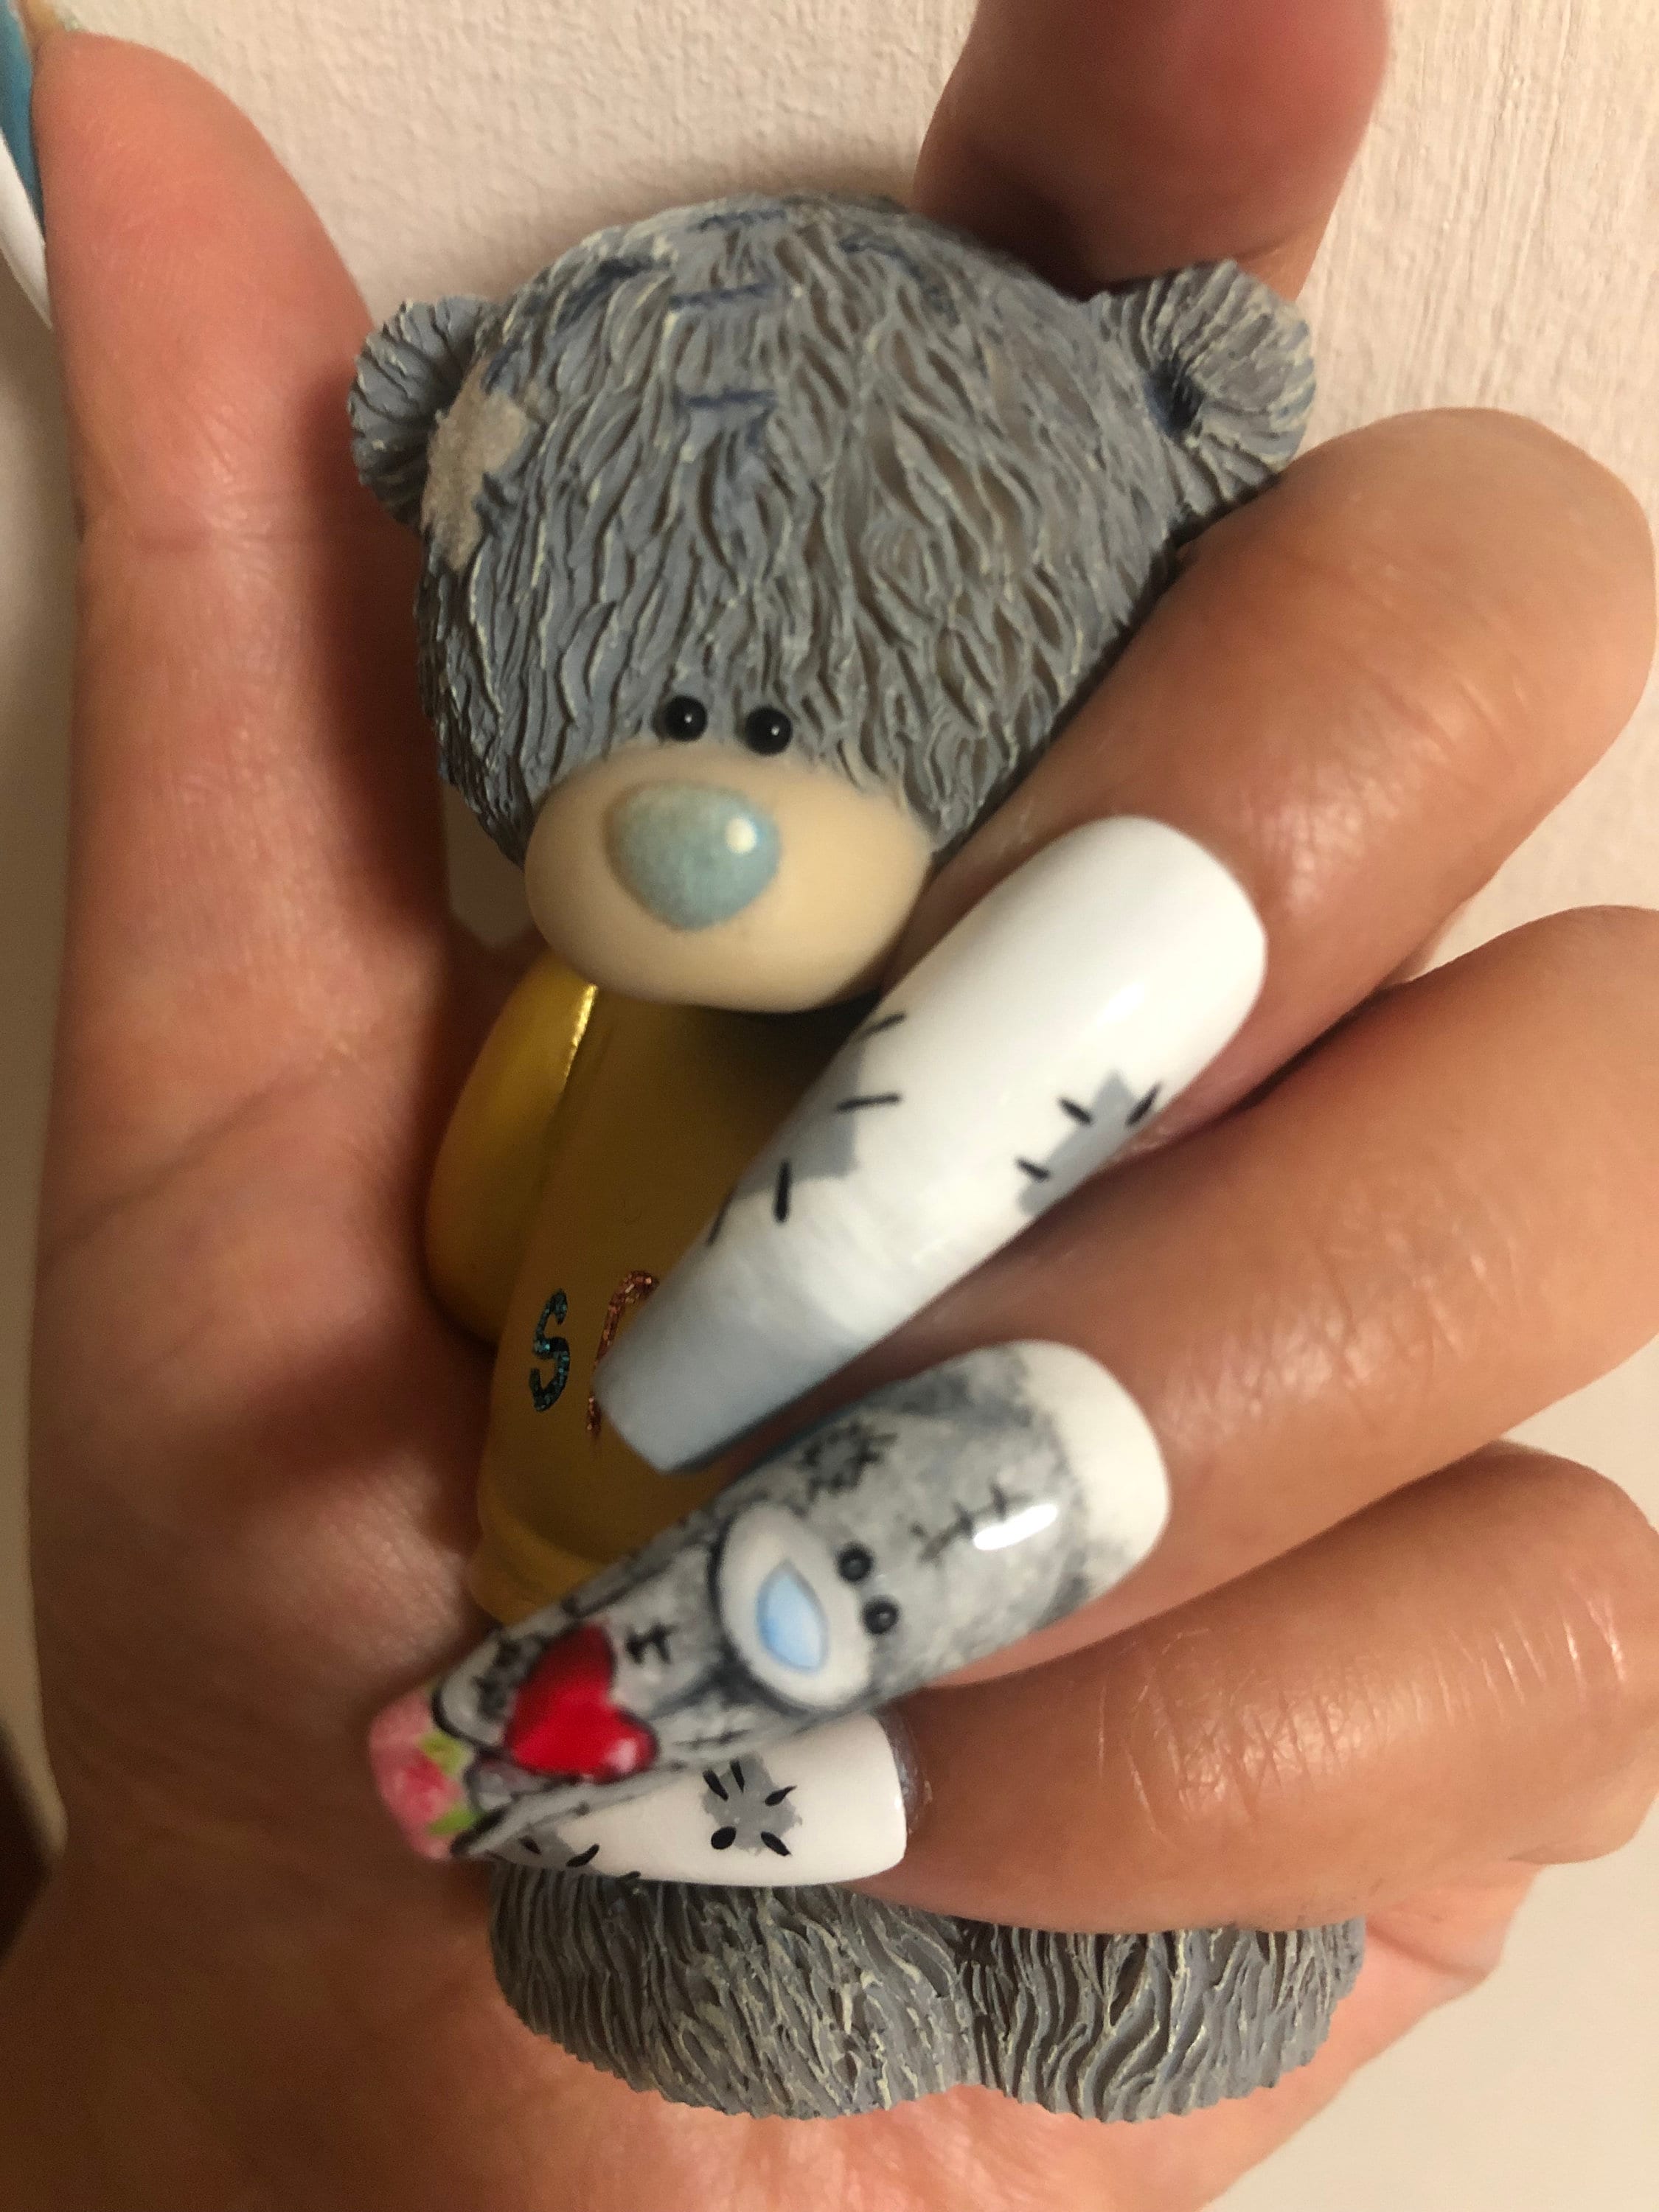 Customizable teddy bear nail charm